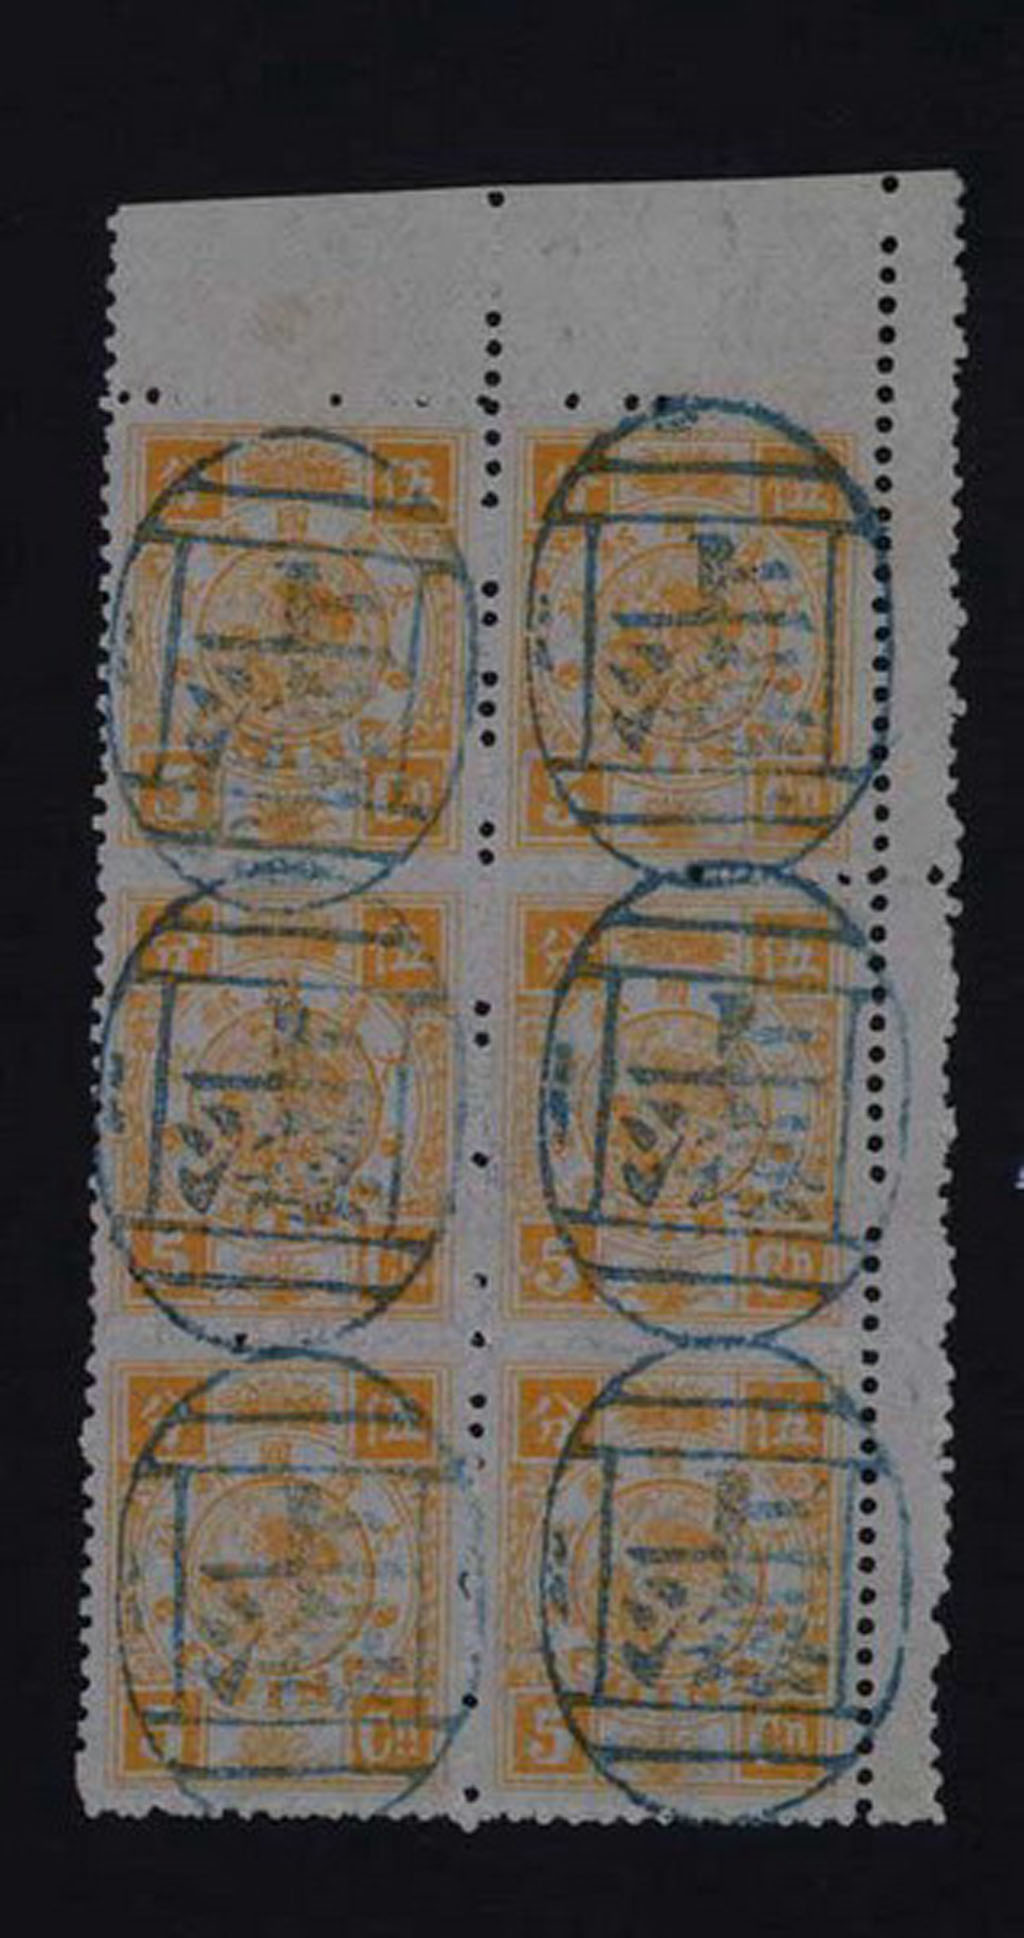 〇1894年慈禧寿辰纪念邮票5分银六方连一件